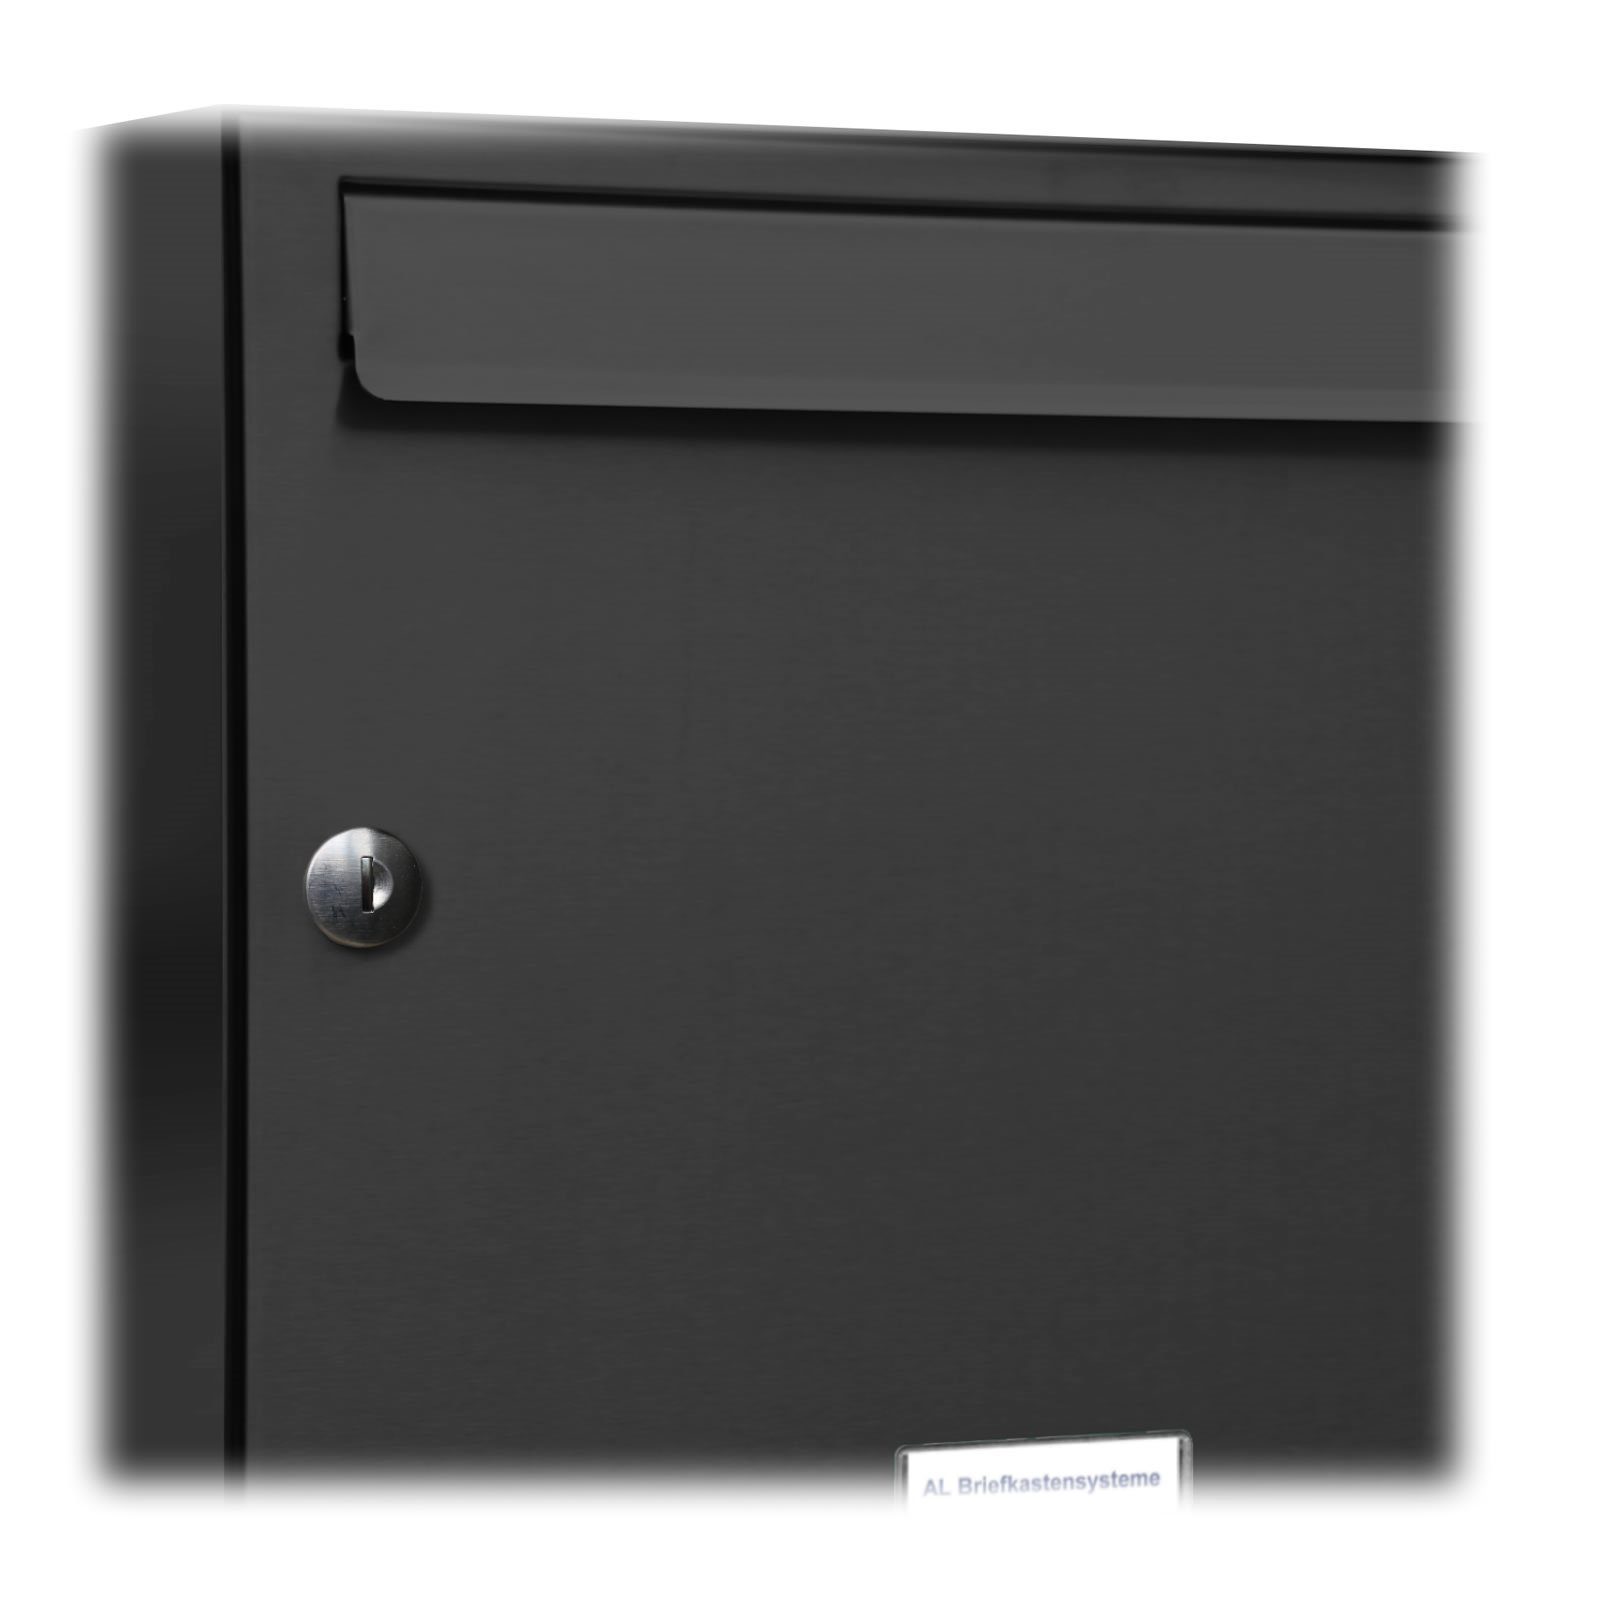 7016 Briefkasten Briefkastensysteme Premium Anthrazit 1x3 Außen S Wandbriefkasten Farbe 3er Klingel AL RAL